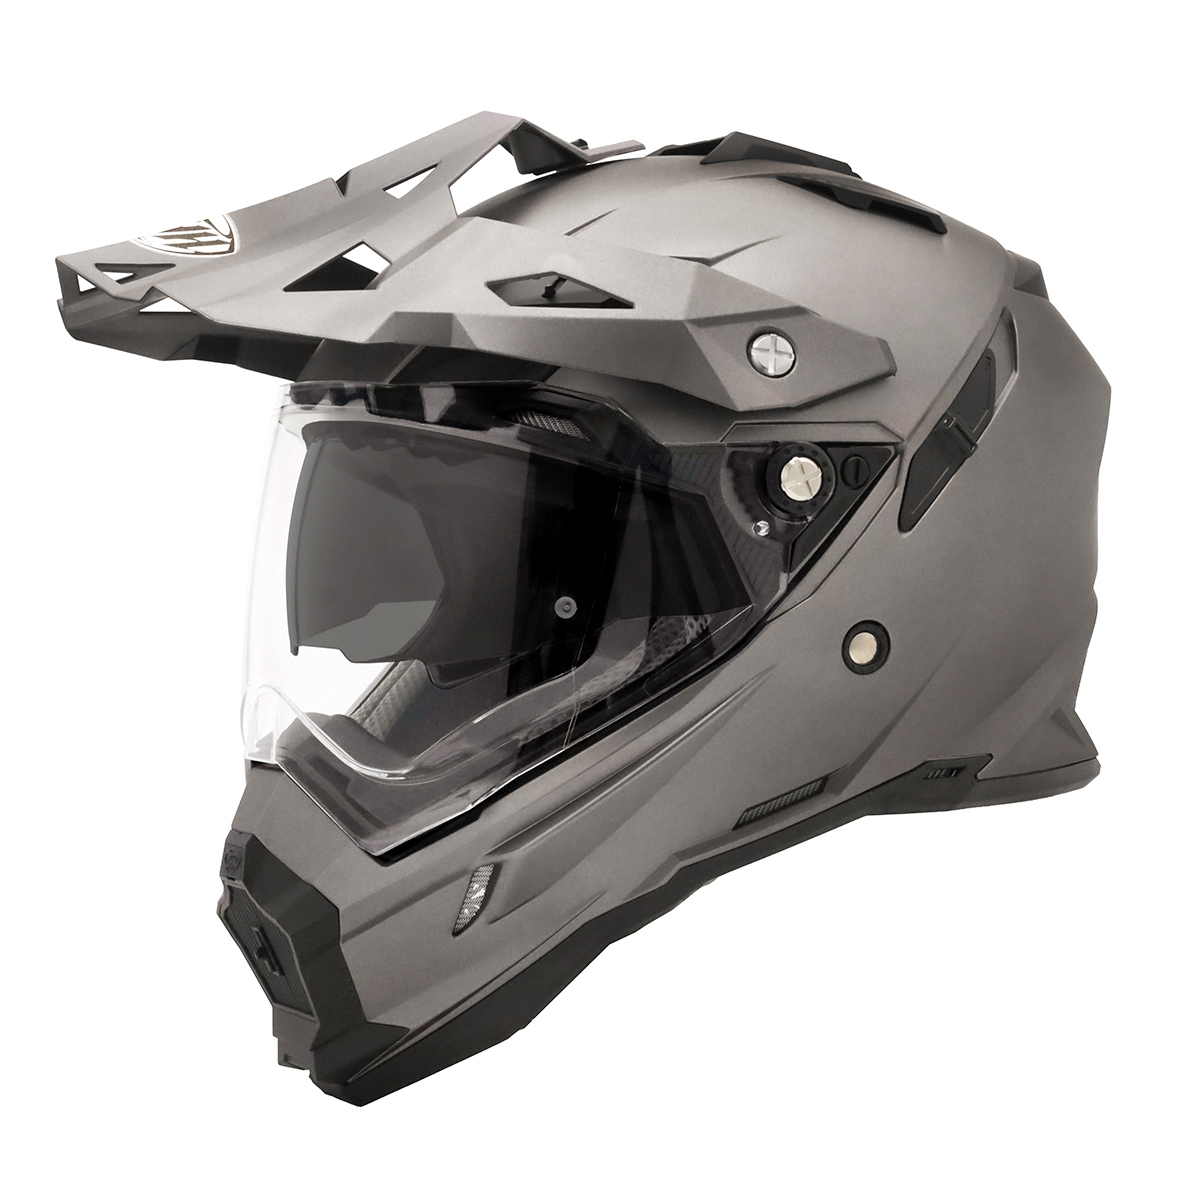 THH full-face helmet TX-28 mat f Lost gray inner sun visor installing model off-road model PinLock correspondence shield equipment 